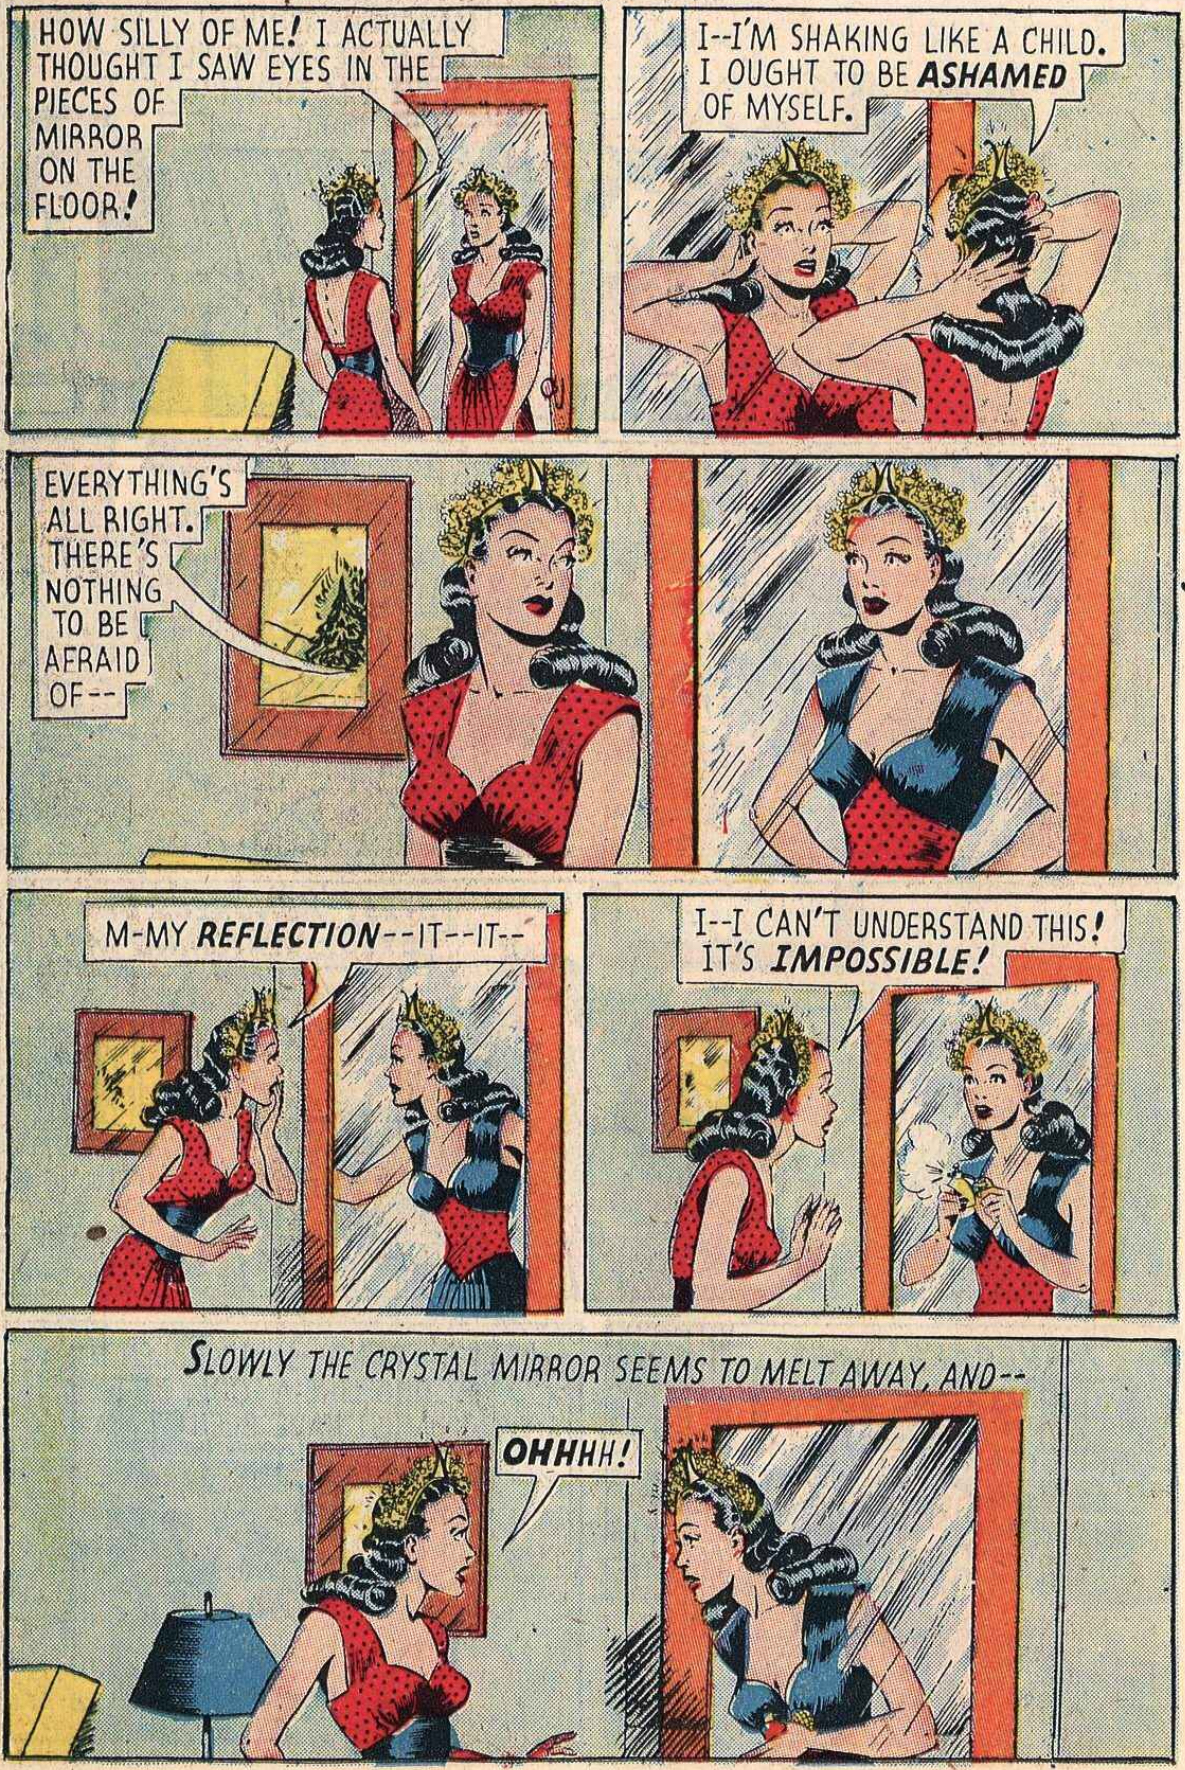 Motsvarande sida från en färglagd version av The Mirror People, ur Magic Comics #120, utgiven av McKay Co., ursprungligen publicerade från 13~14 oktober 1944 ©KFS